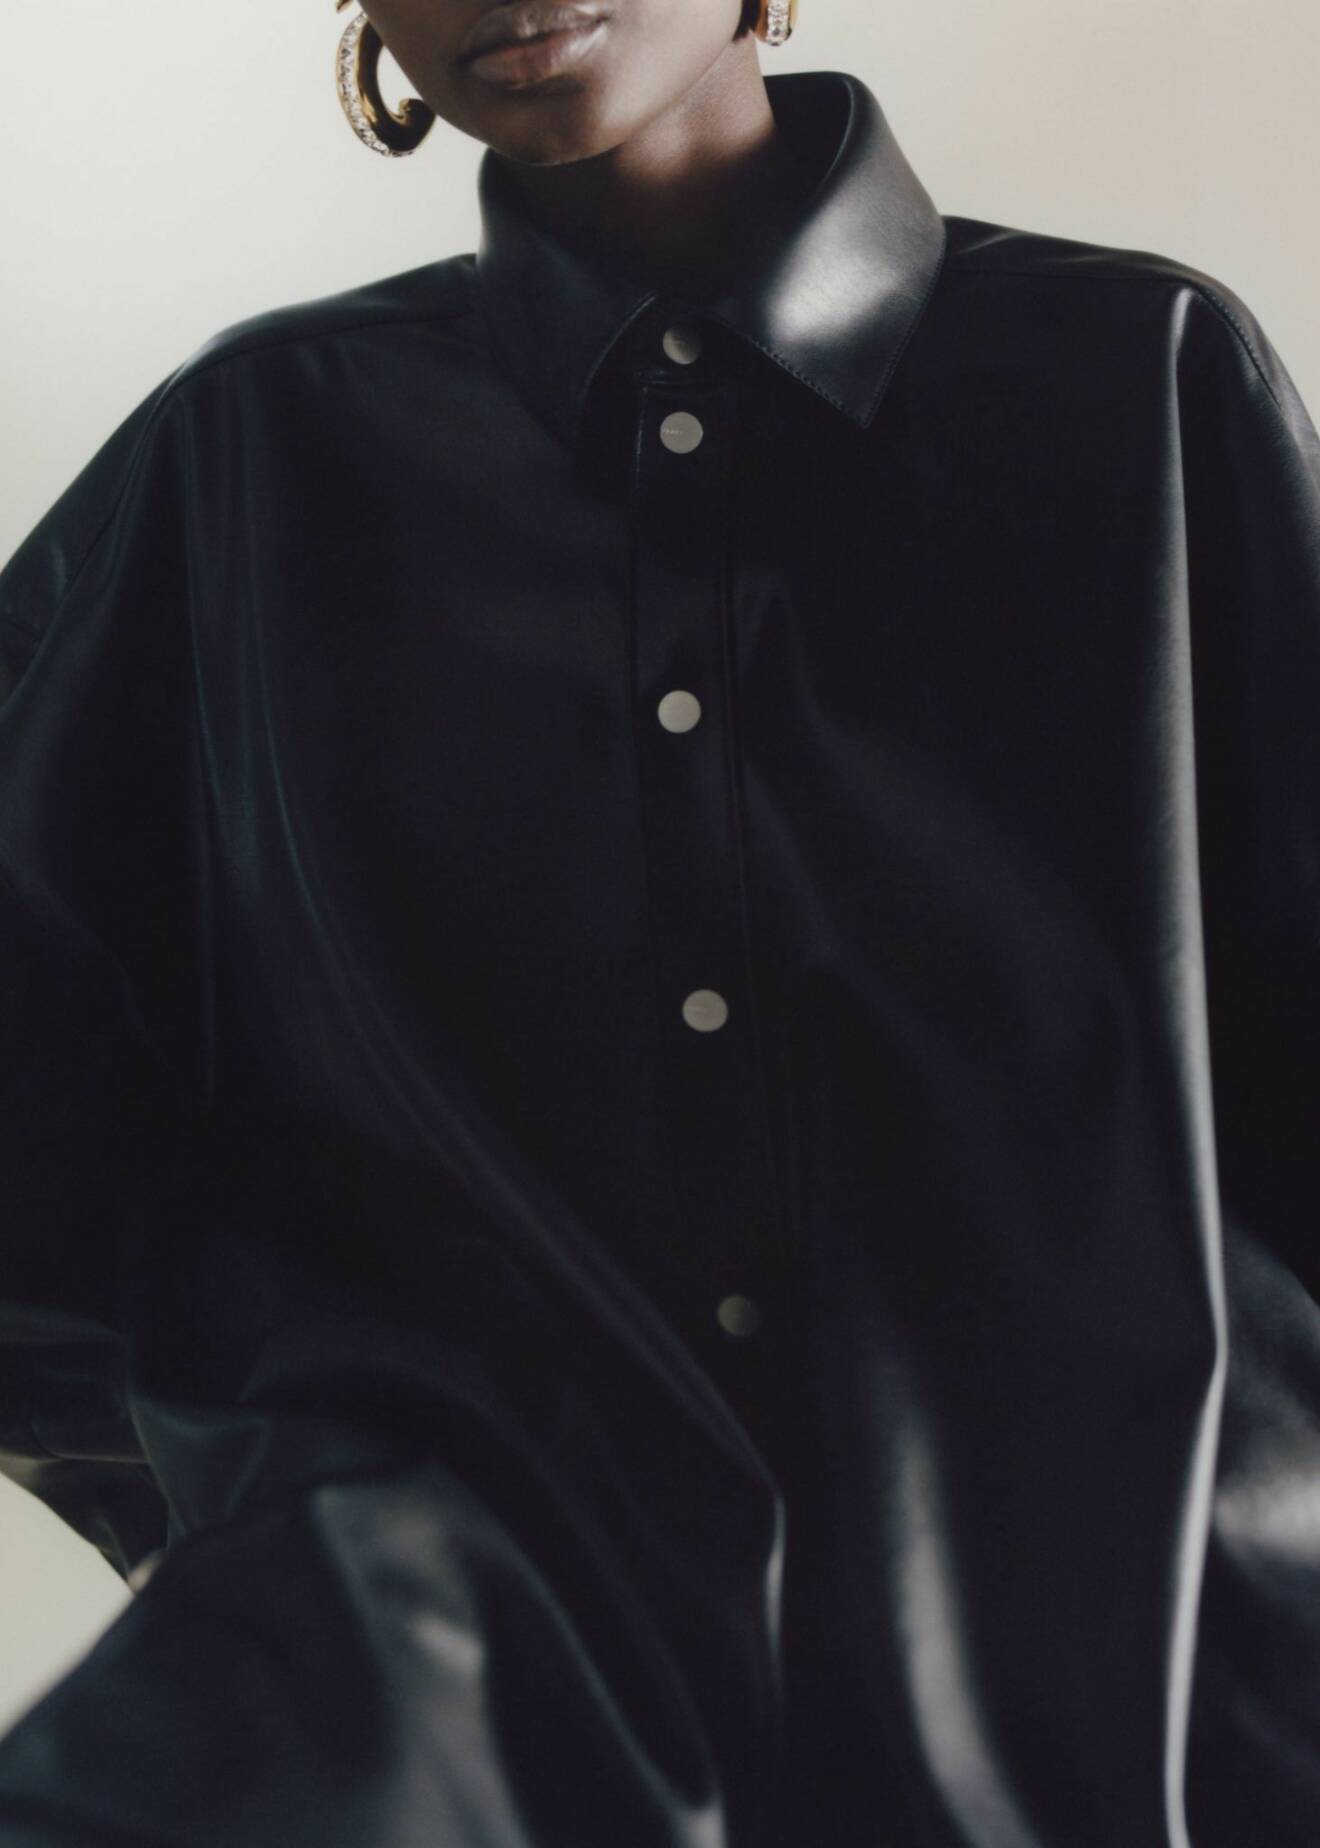 Rihannas Fenty släpper kapselkollektion i konstläder – svart skjorta.